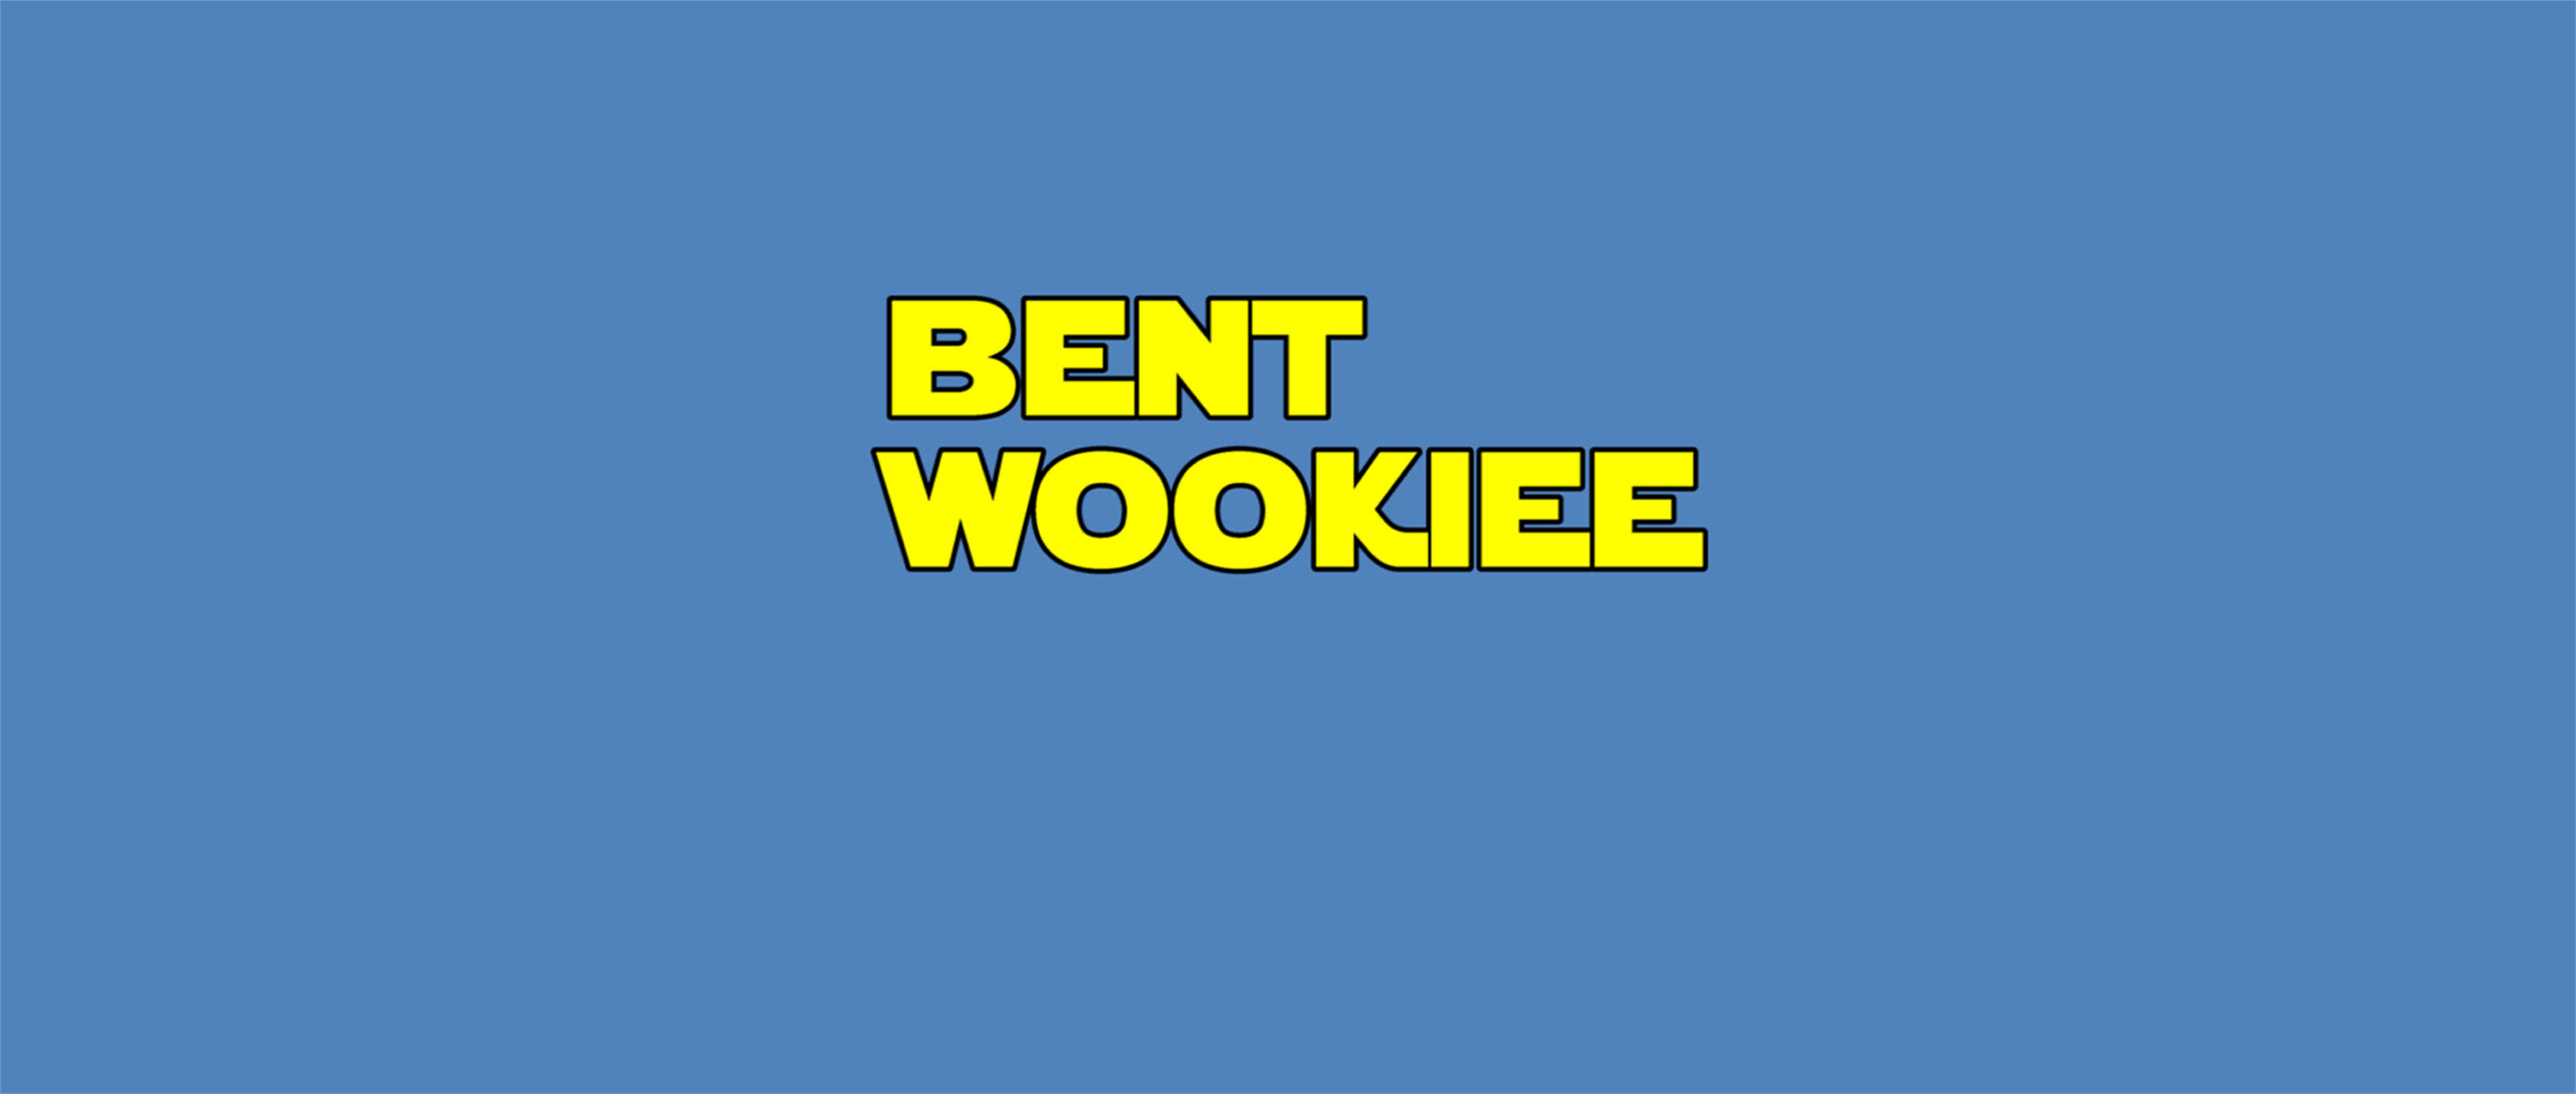 Bent Wookiee